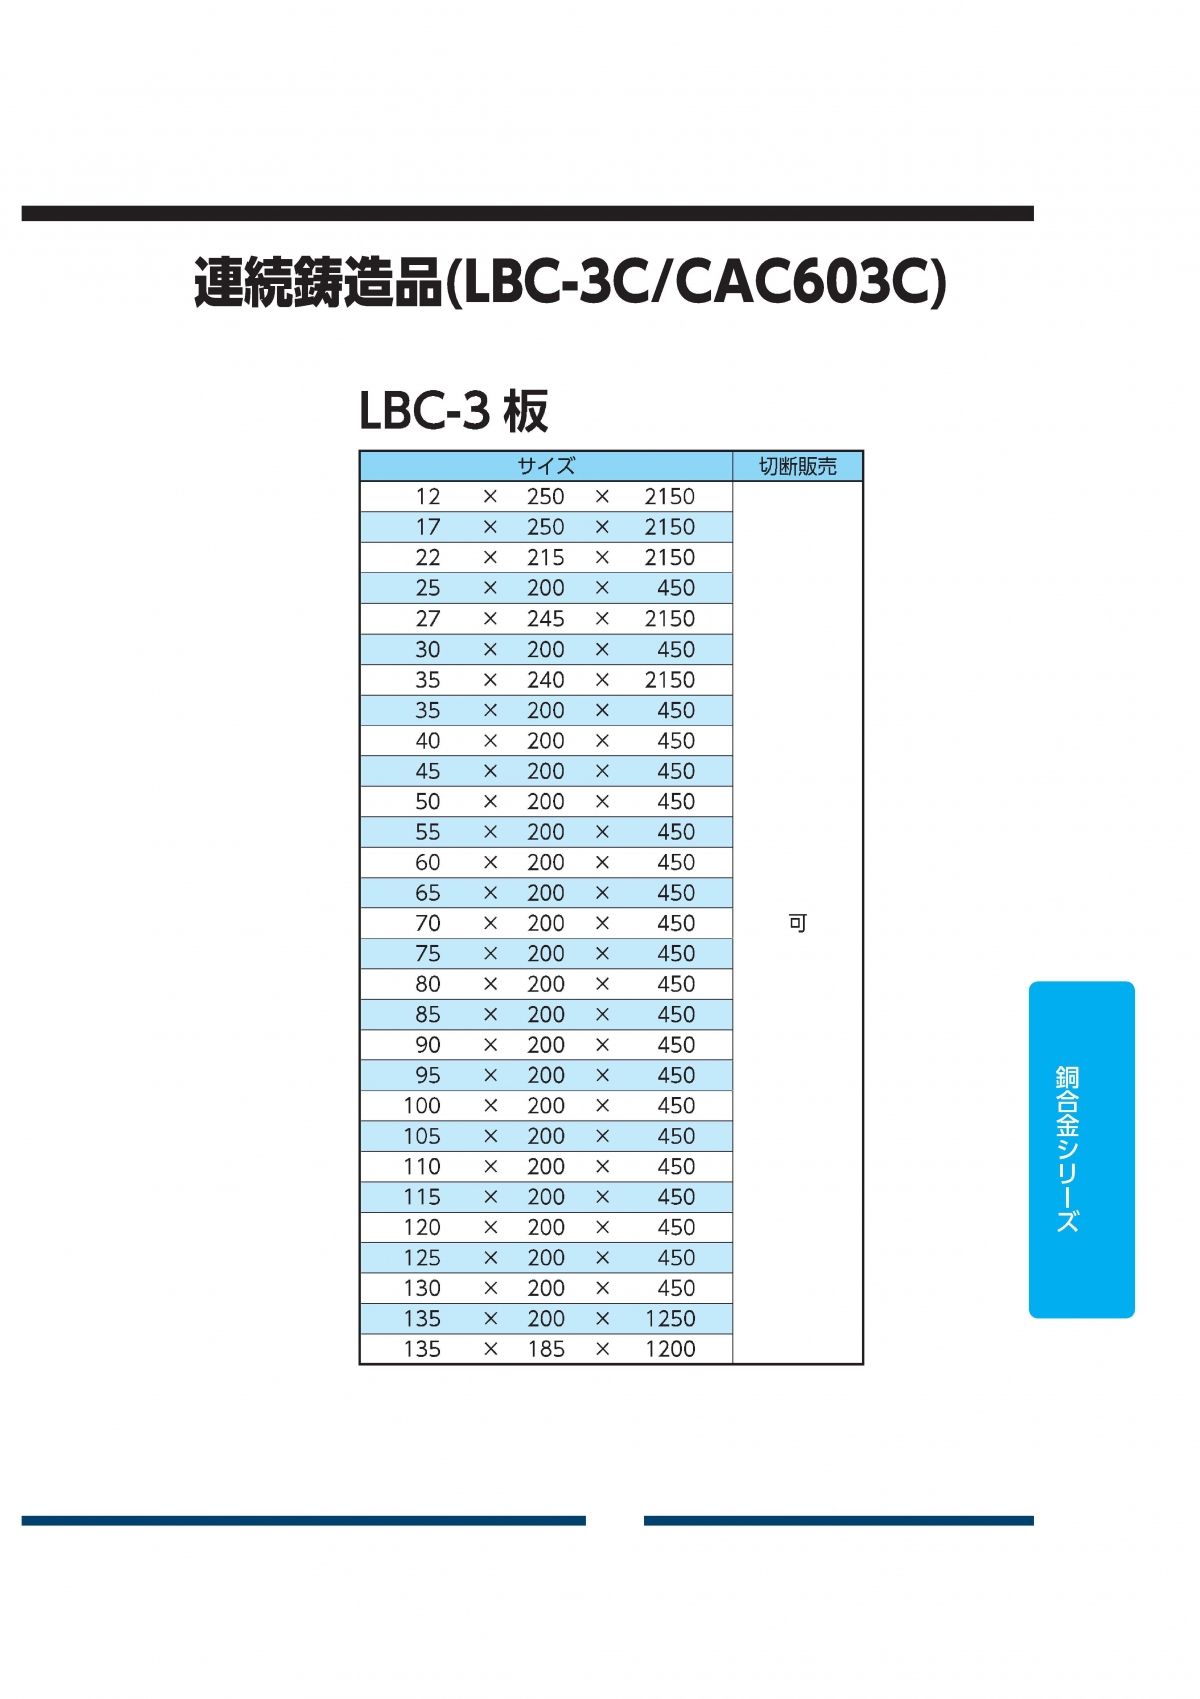 LBC-3板(CAC603C)